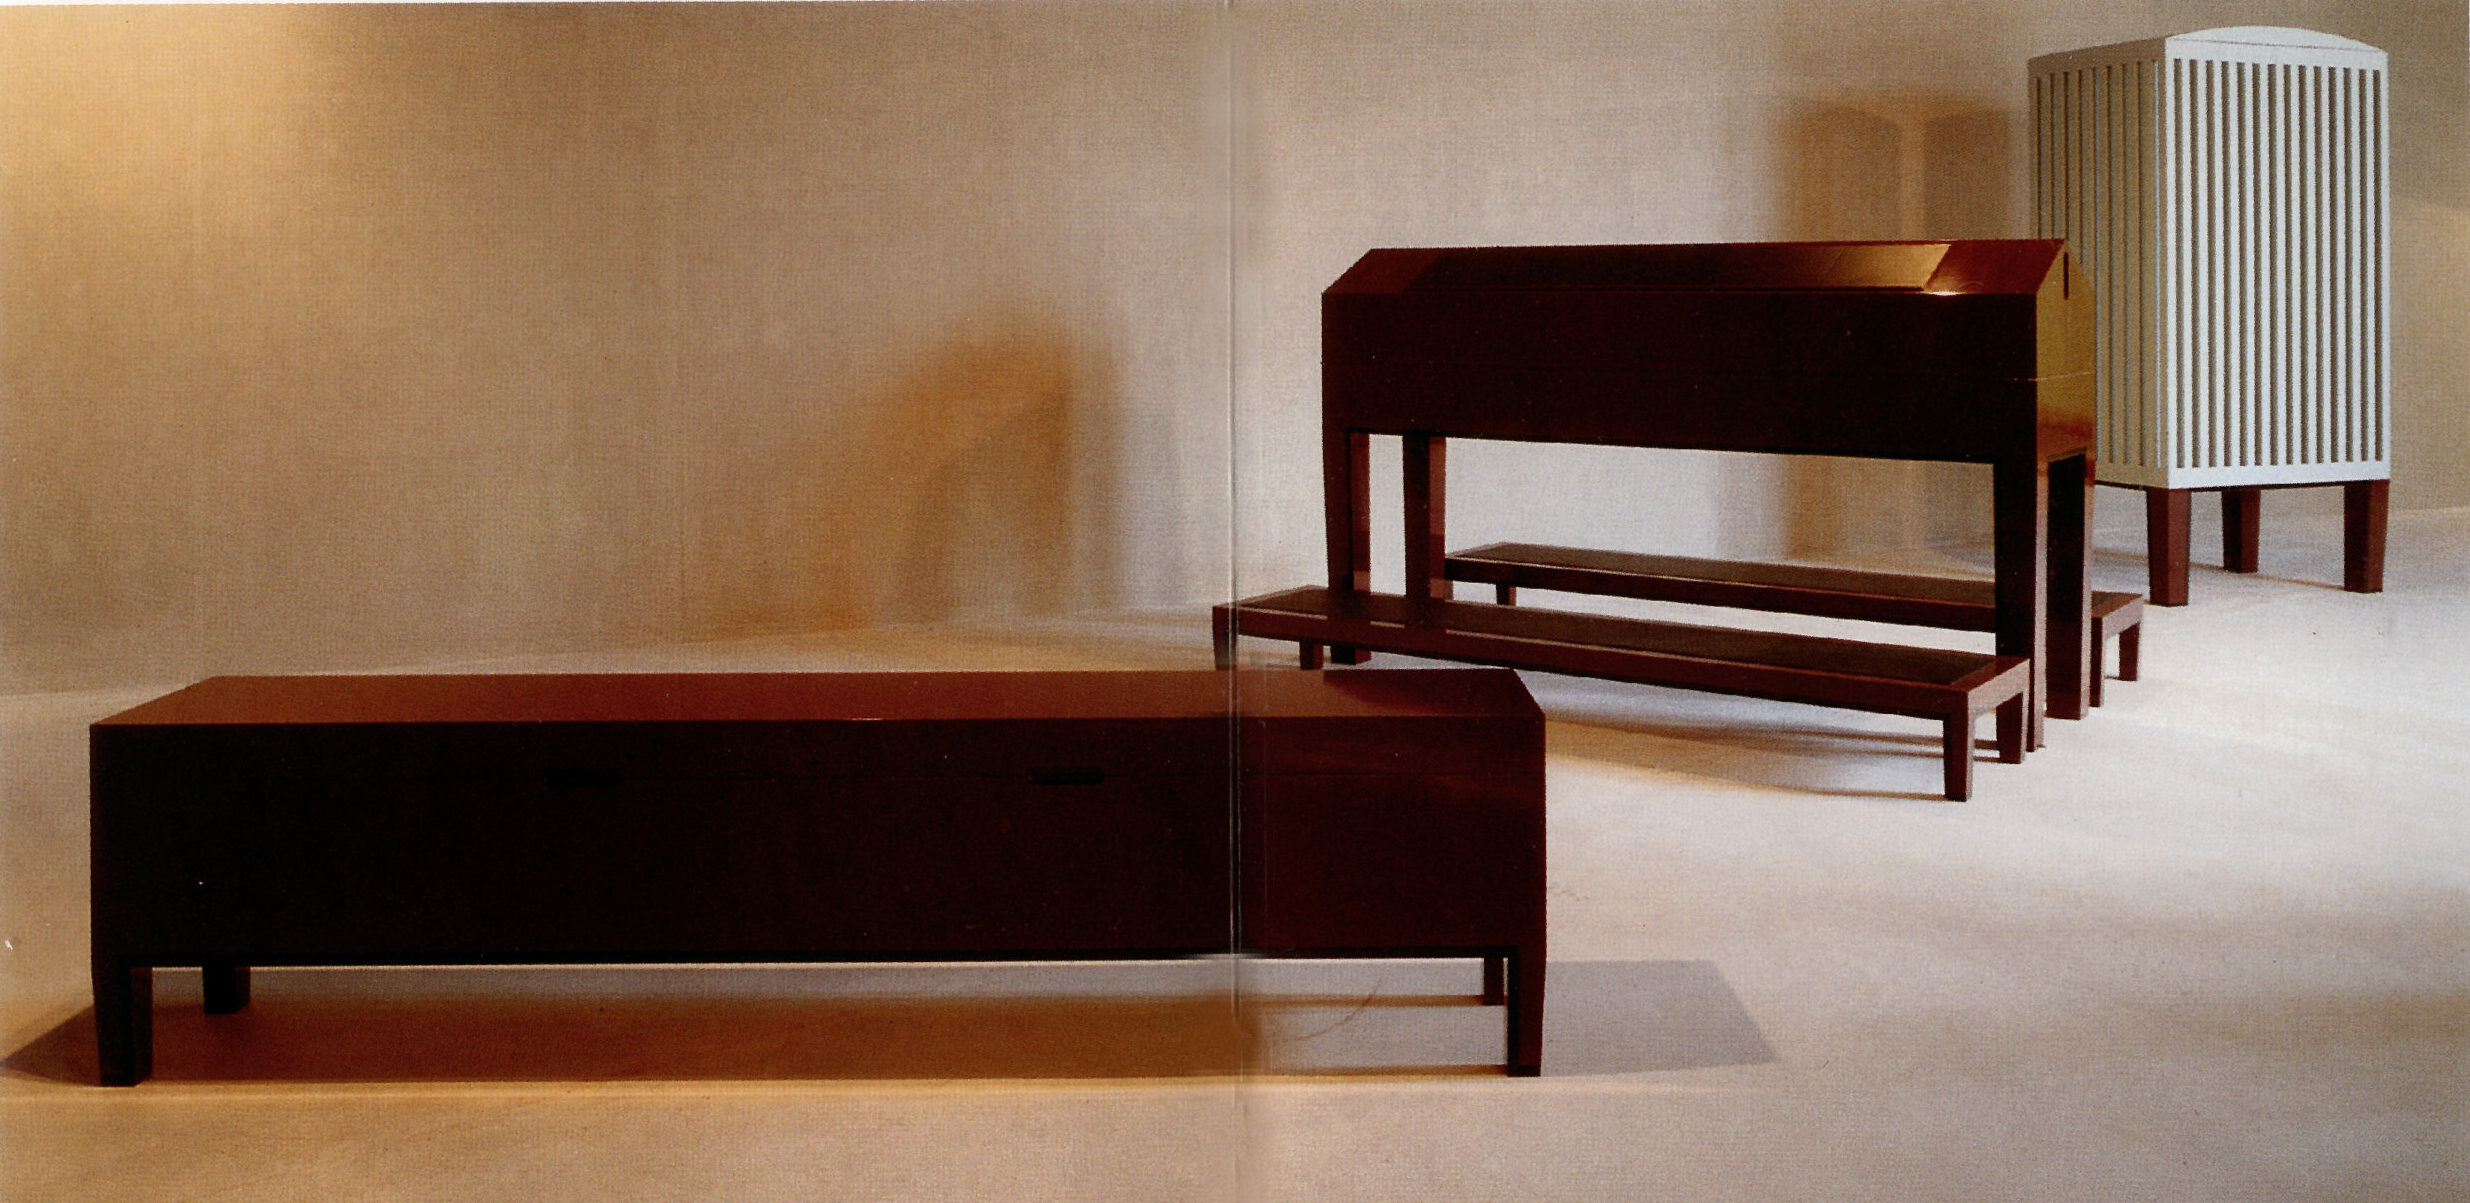 Objekter, 3m lang bænk, meget høj skrivepult, 4m højt skab til udstillingen "CHAMBRE" på Arken, Ishøj. Ved Poul Ingemann & Ingvar Cronhammer